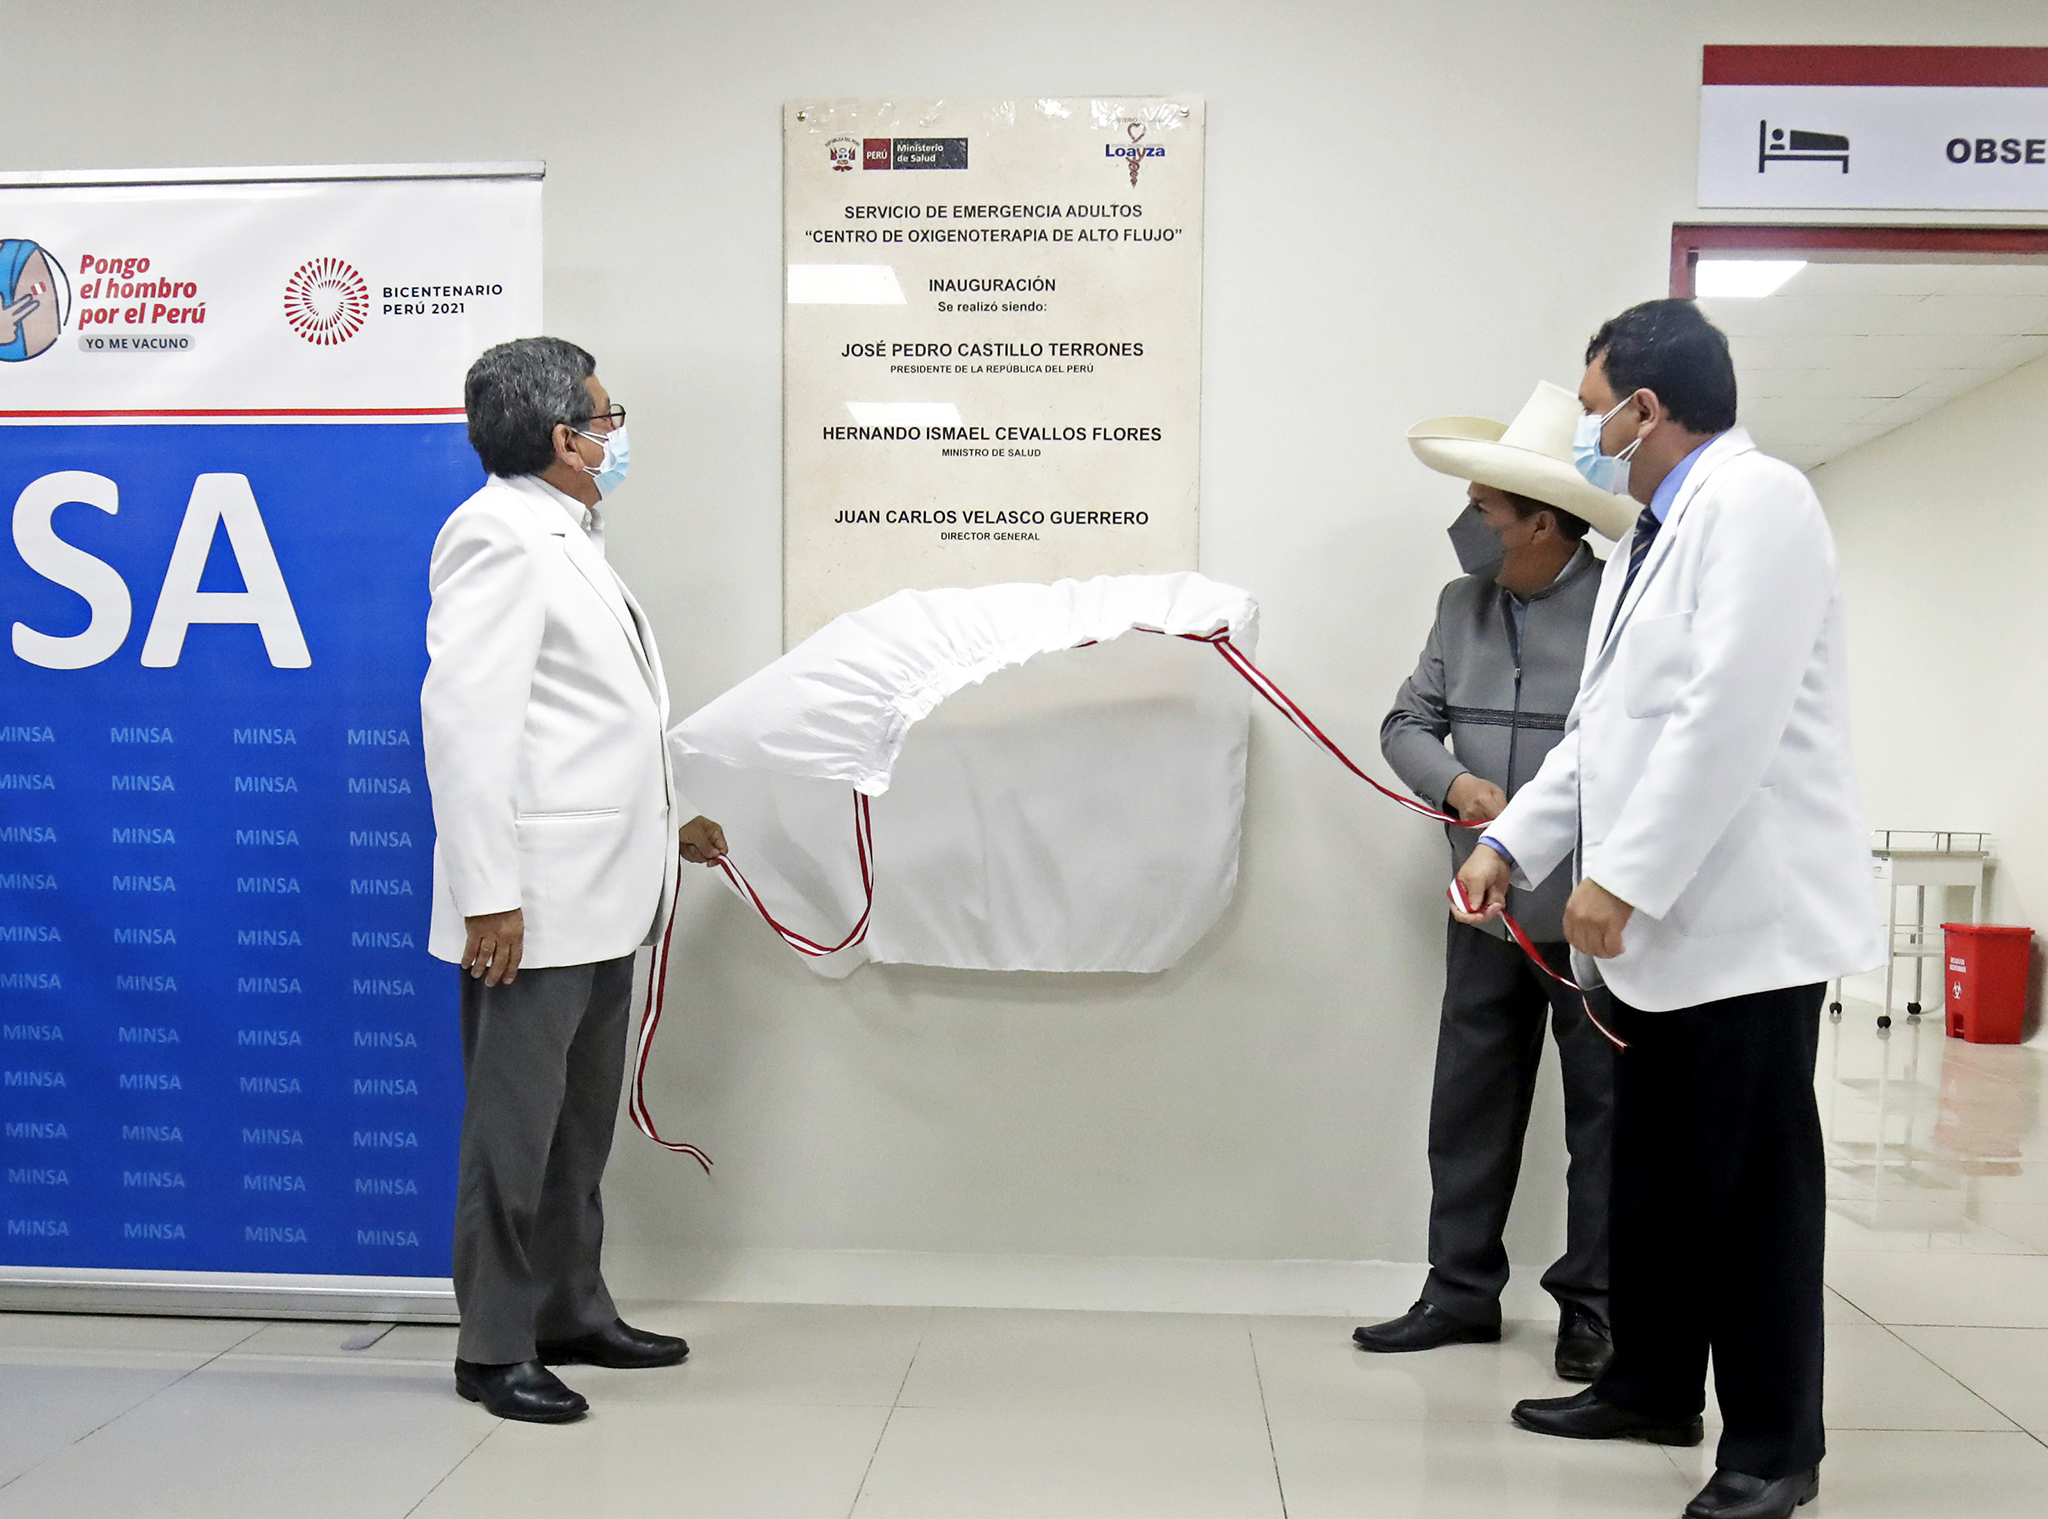 PERÚ: Presidente Pedro Castillo inauguro Centro de Oxigenoterapia de Alto Flujo en el Hospital Loayza